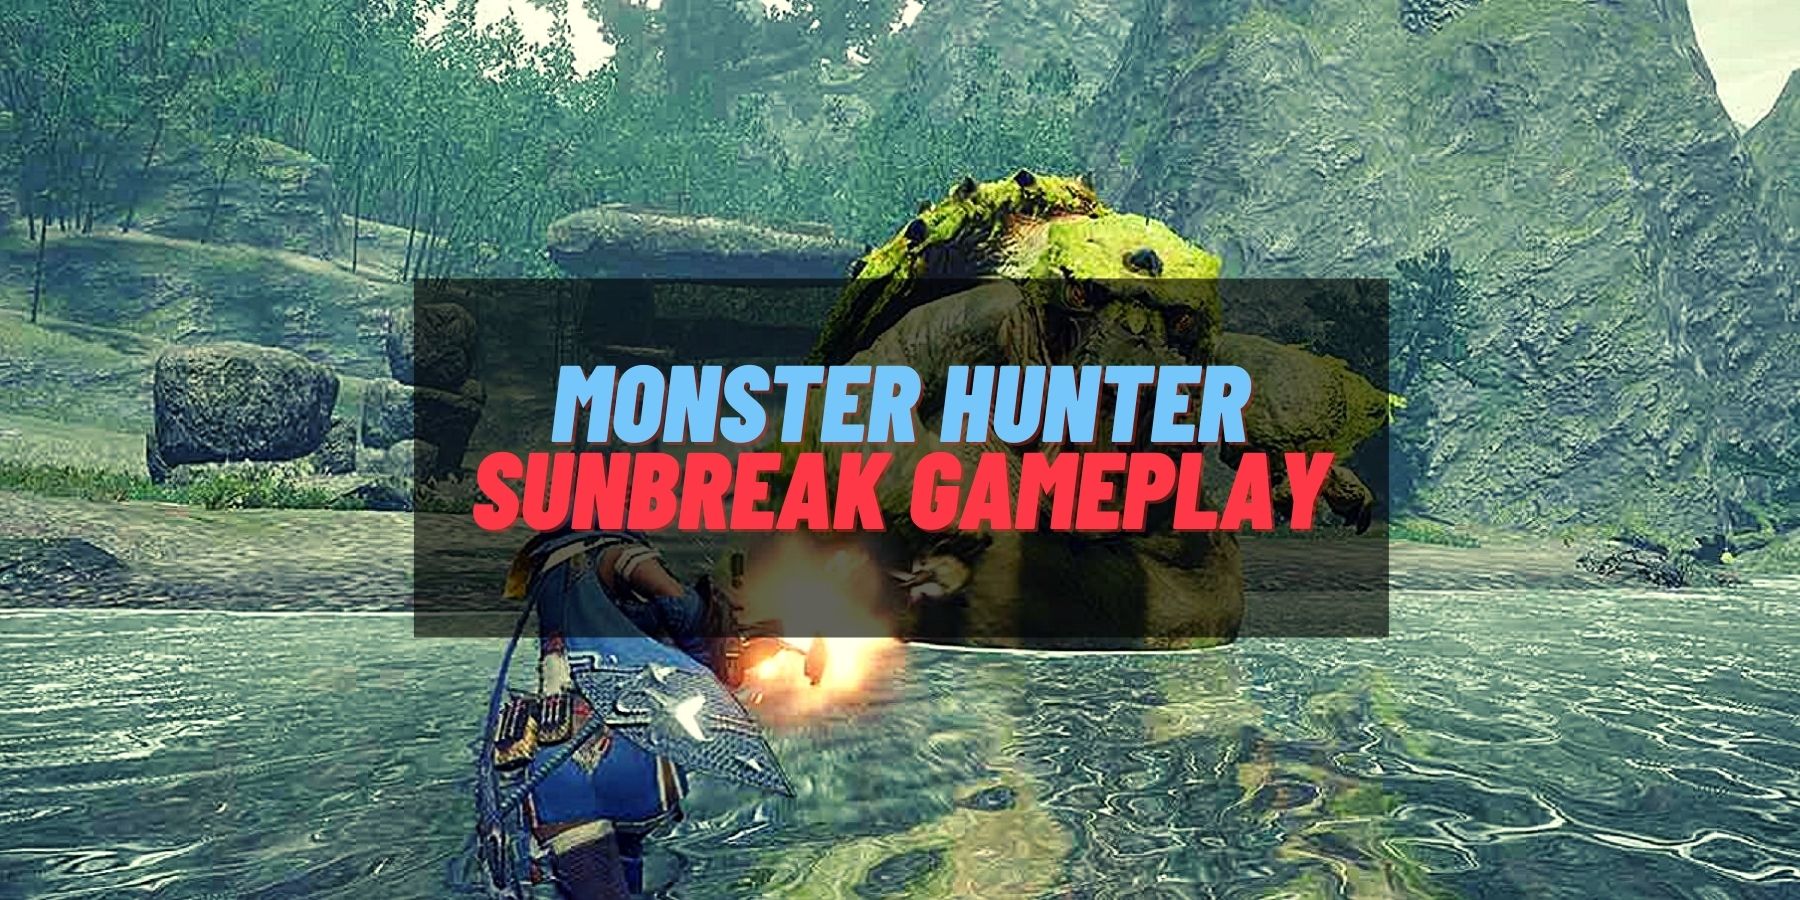 Monster Hunter Sunbreak Gameplay